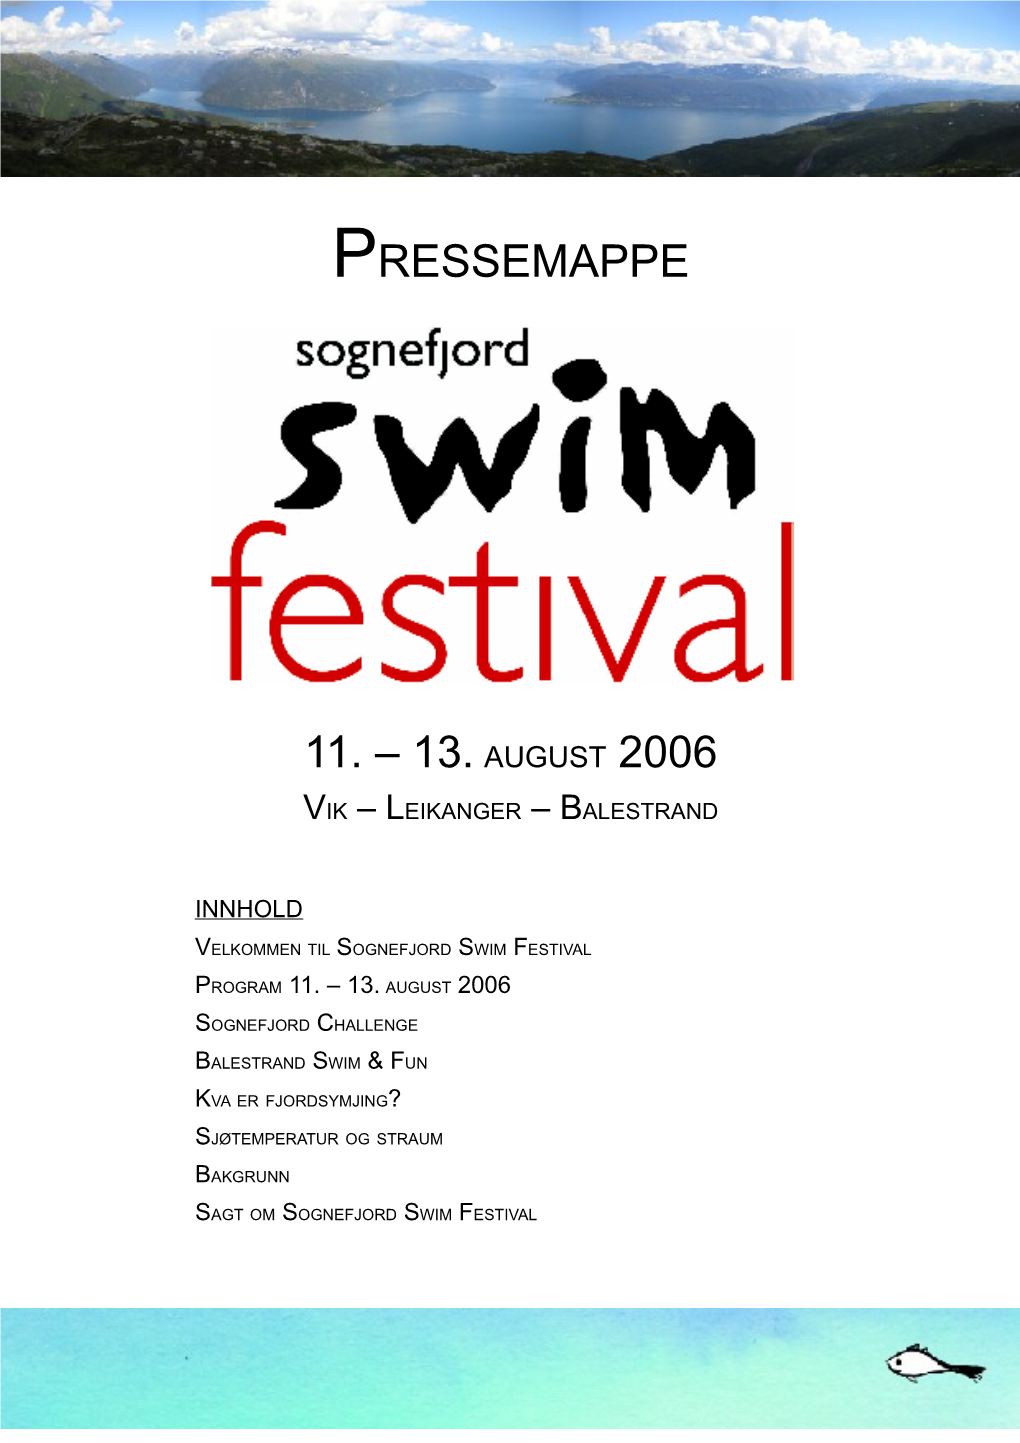 Pressemappe 11. – 13. August 2006